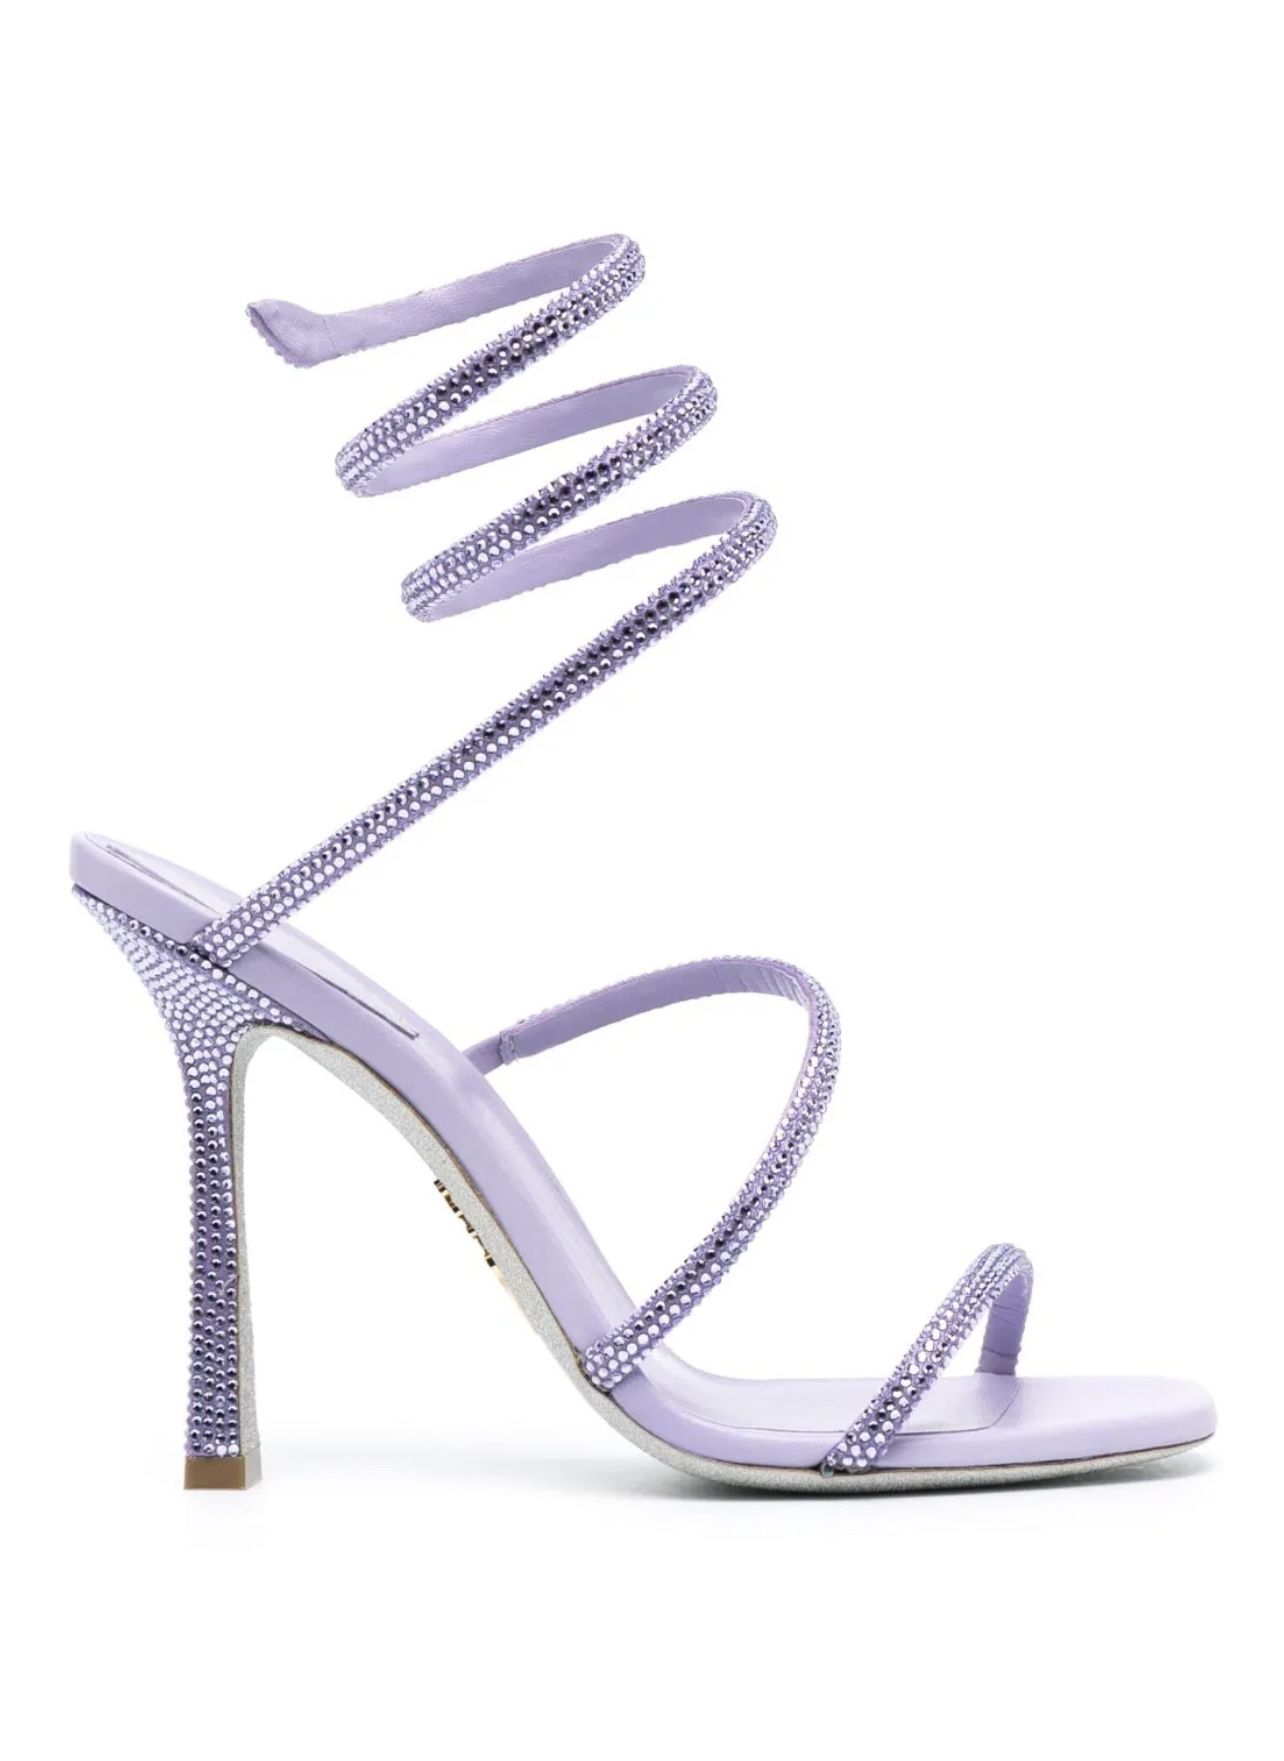 Rene Caovilla Cleo Crystals Embellished Violet Heels US 7 EU 37 💜 Purple Shoes